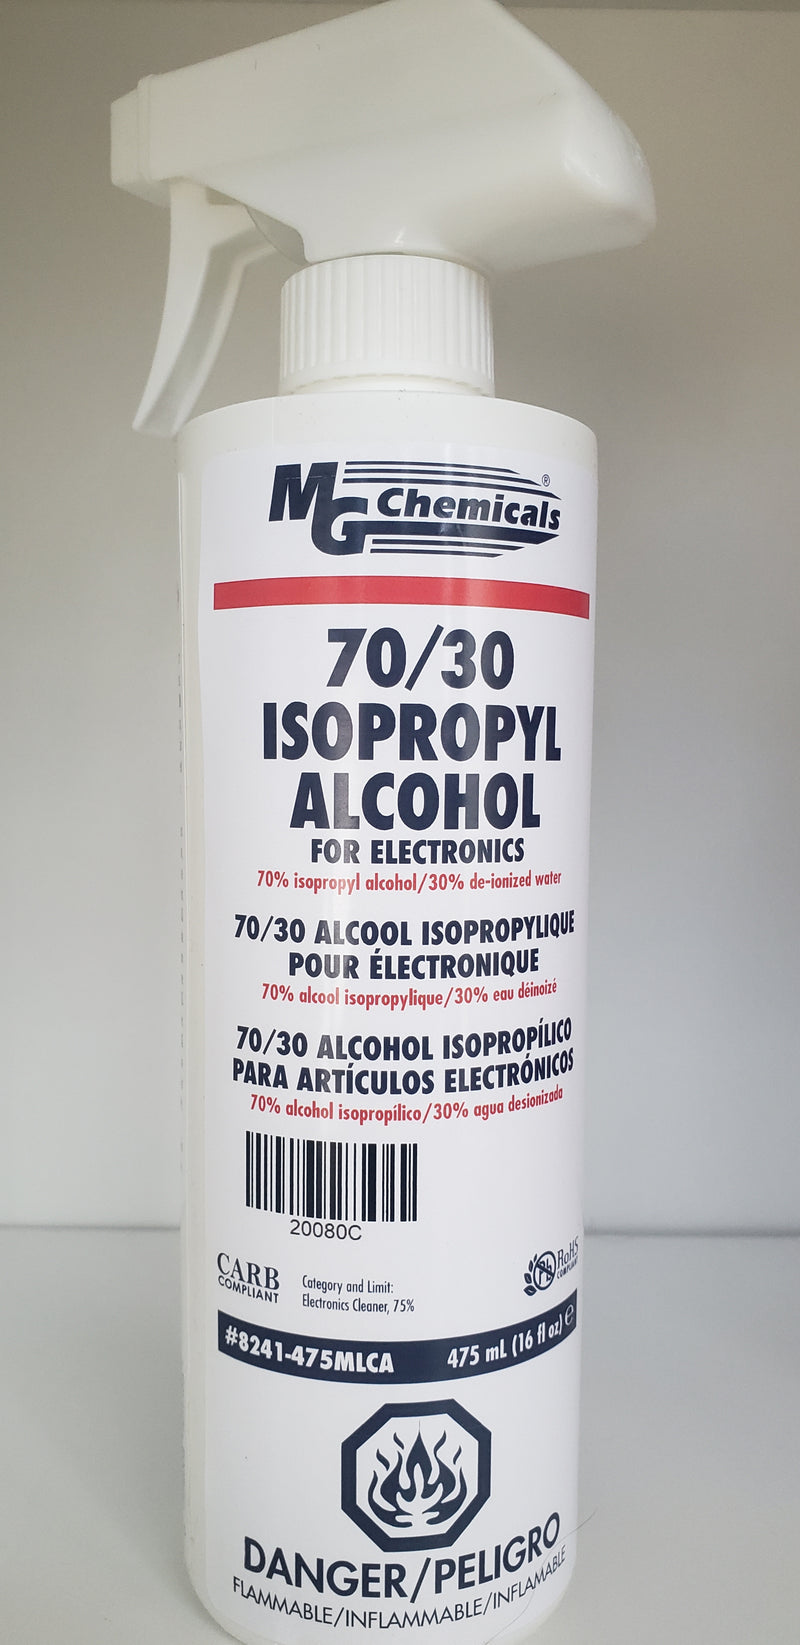 Alcool Isopropylique 95% (5 L)